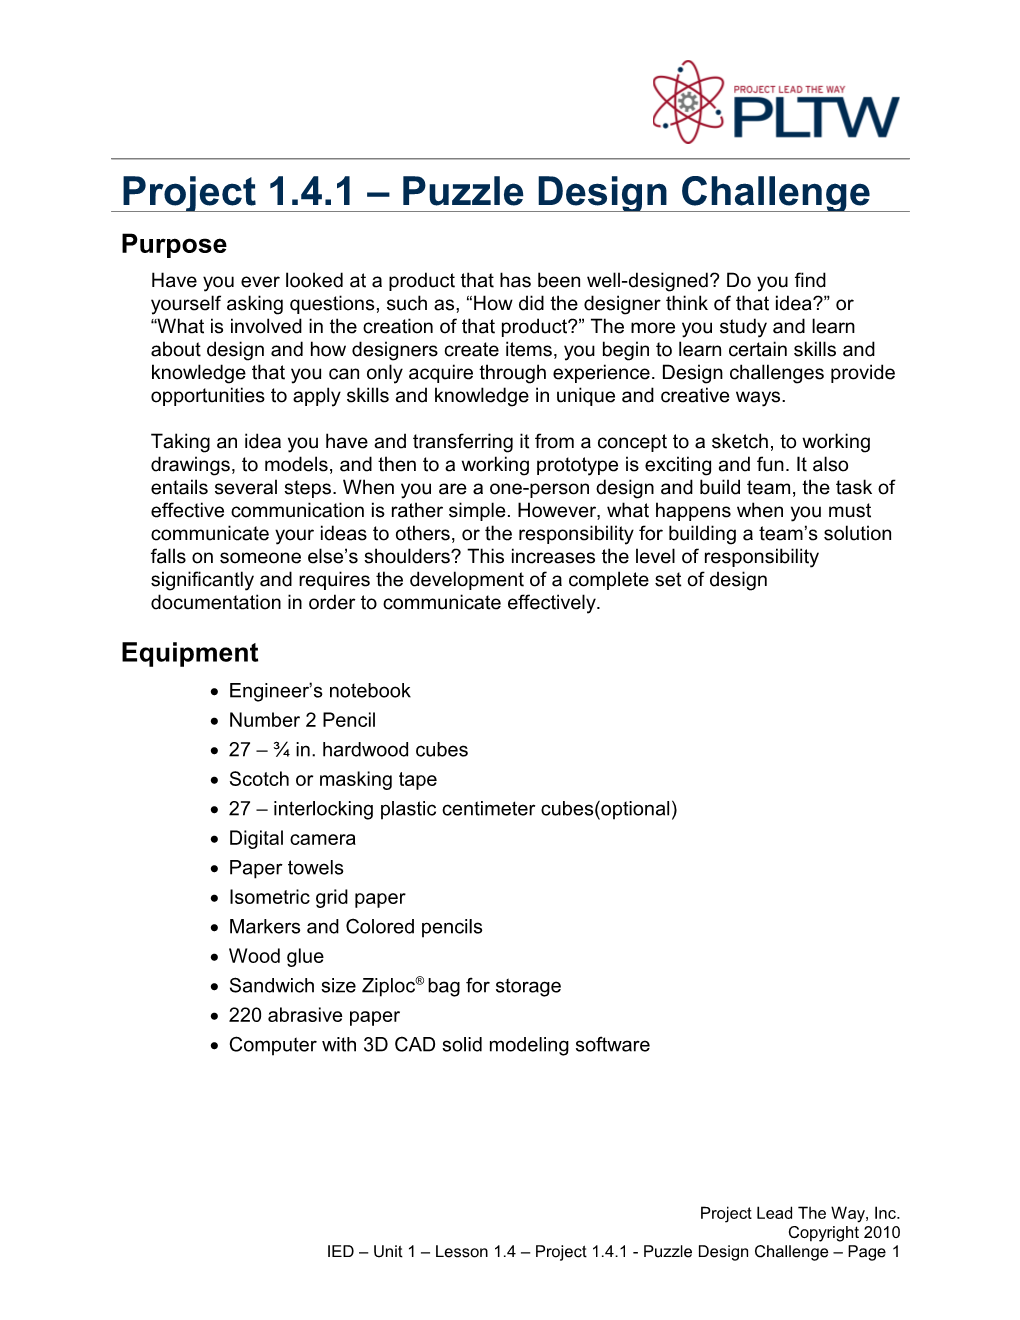 Project 1.4.1:Puzzle Design Challenge